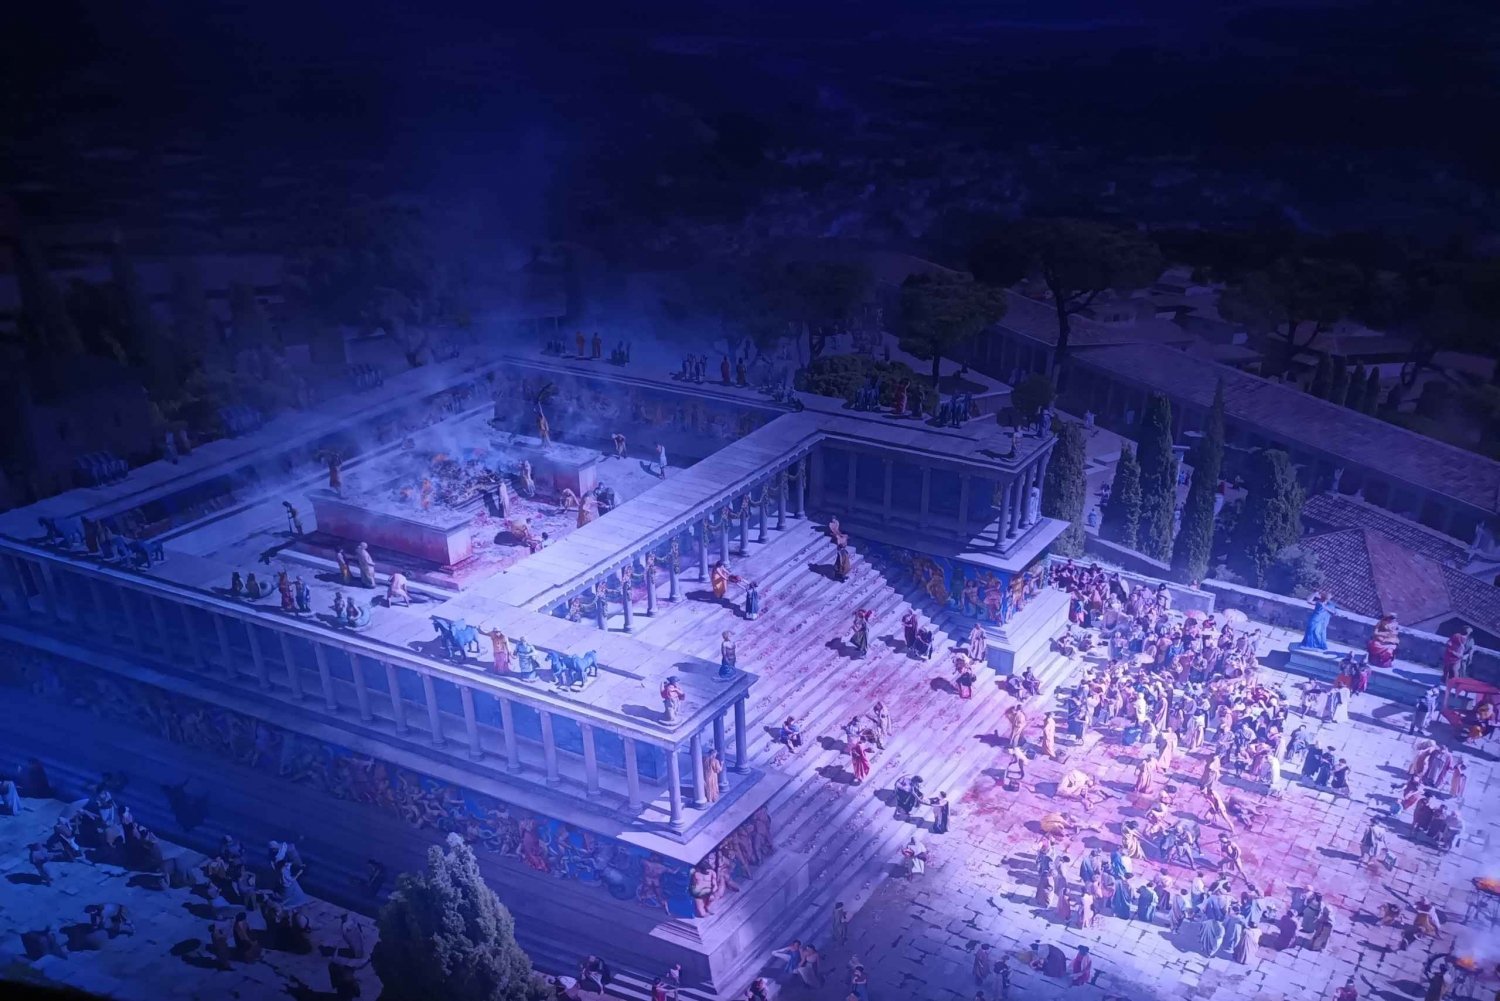 Full Classical Experience - Altes Museum & Pergamon Panorama